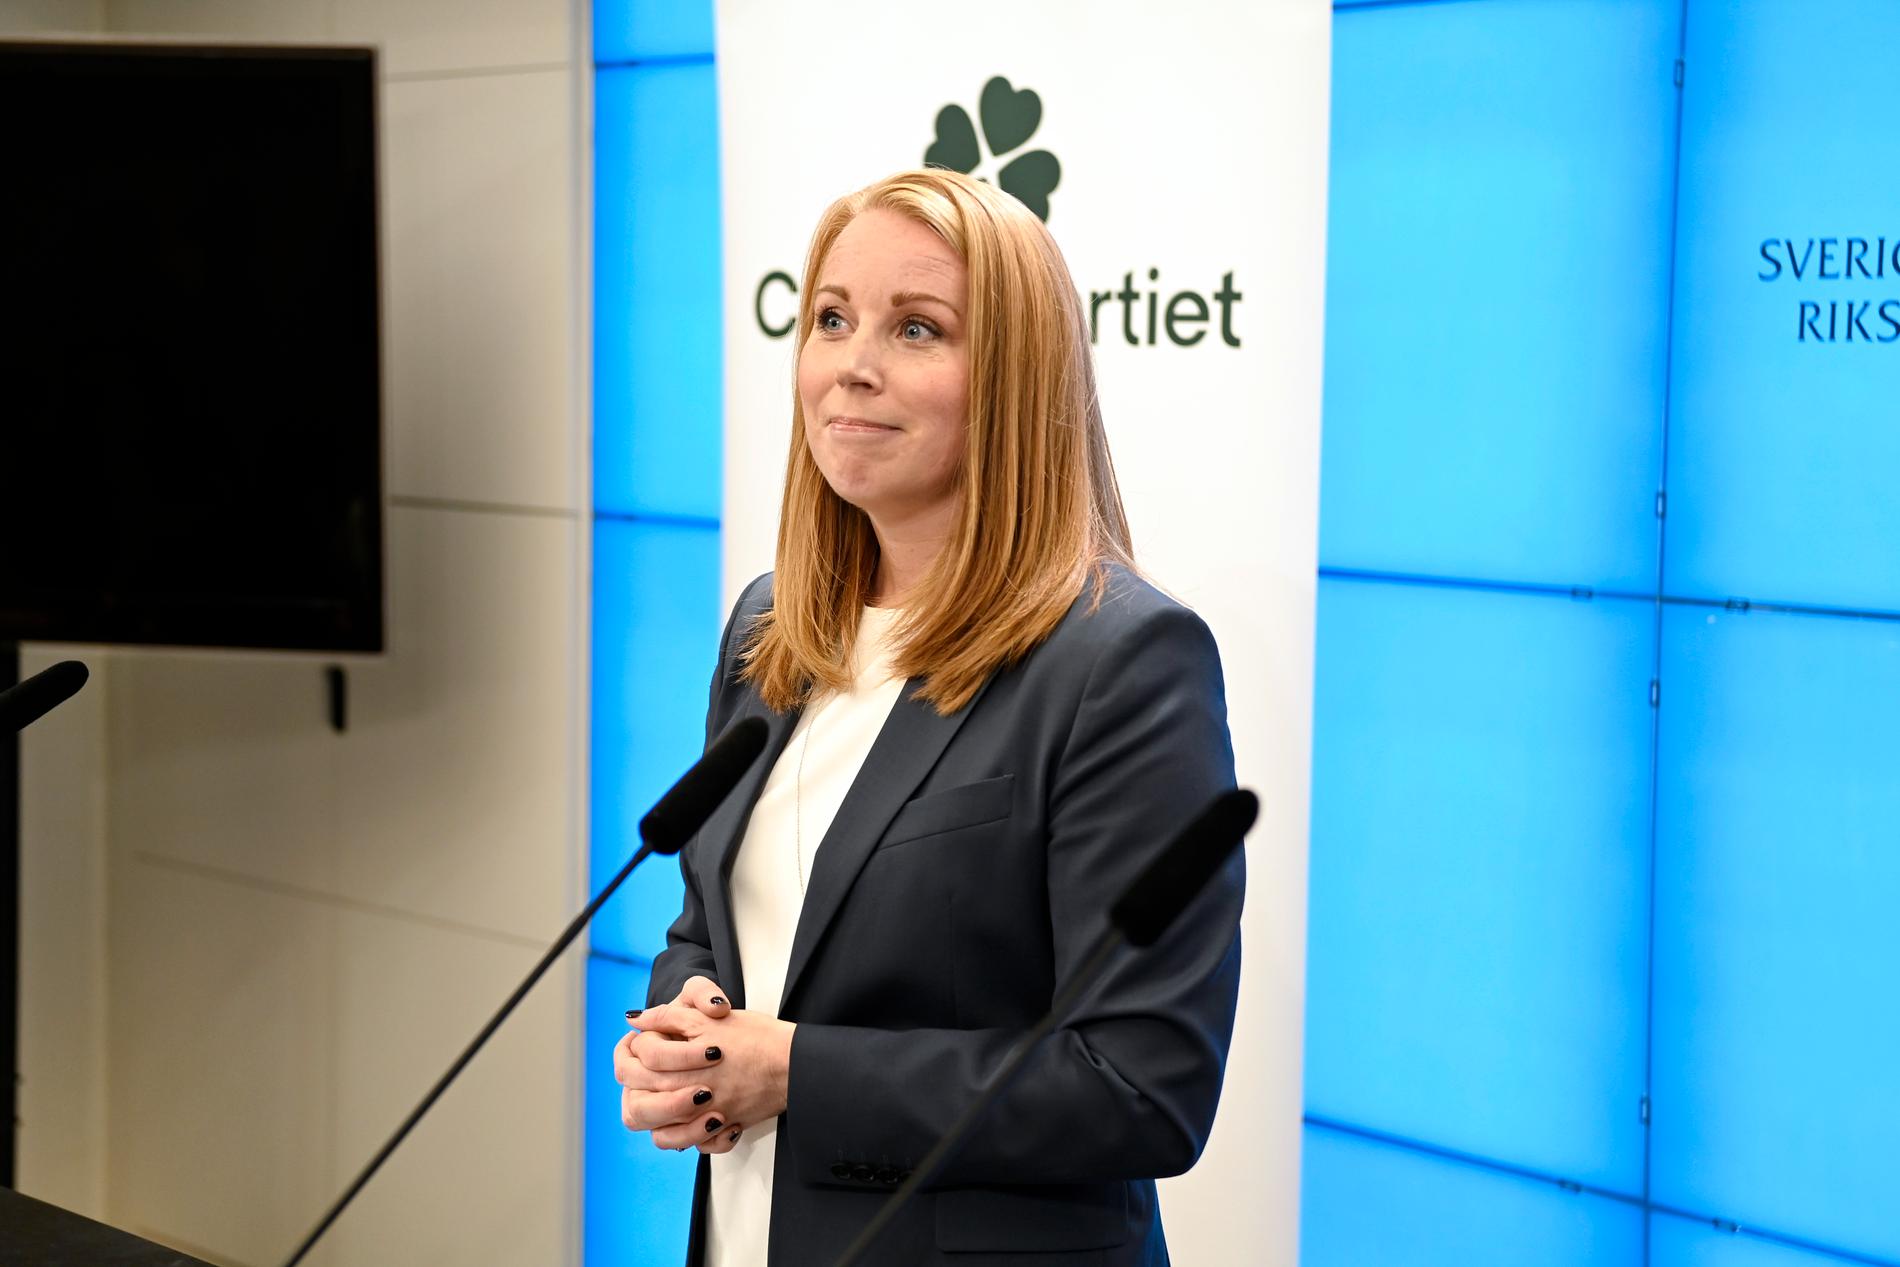 Centerpartiets partiledare Annie Lööf meddelade sin avgång under en pressträff i torsdags.